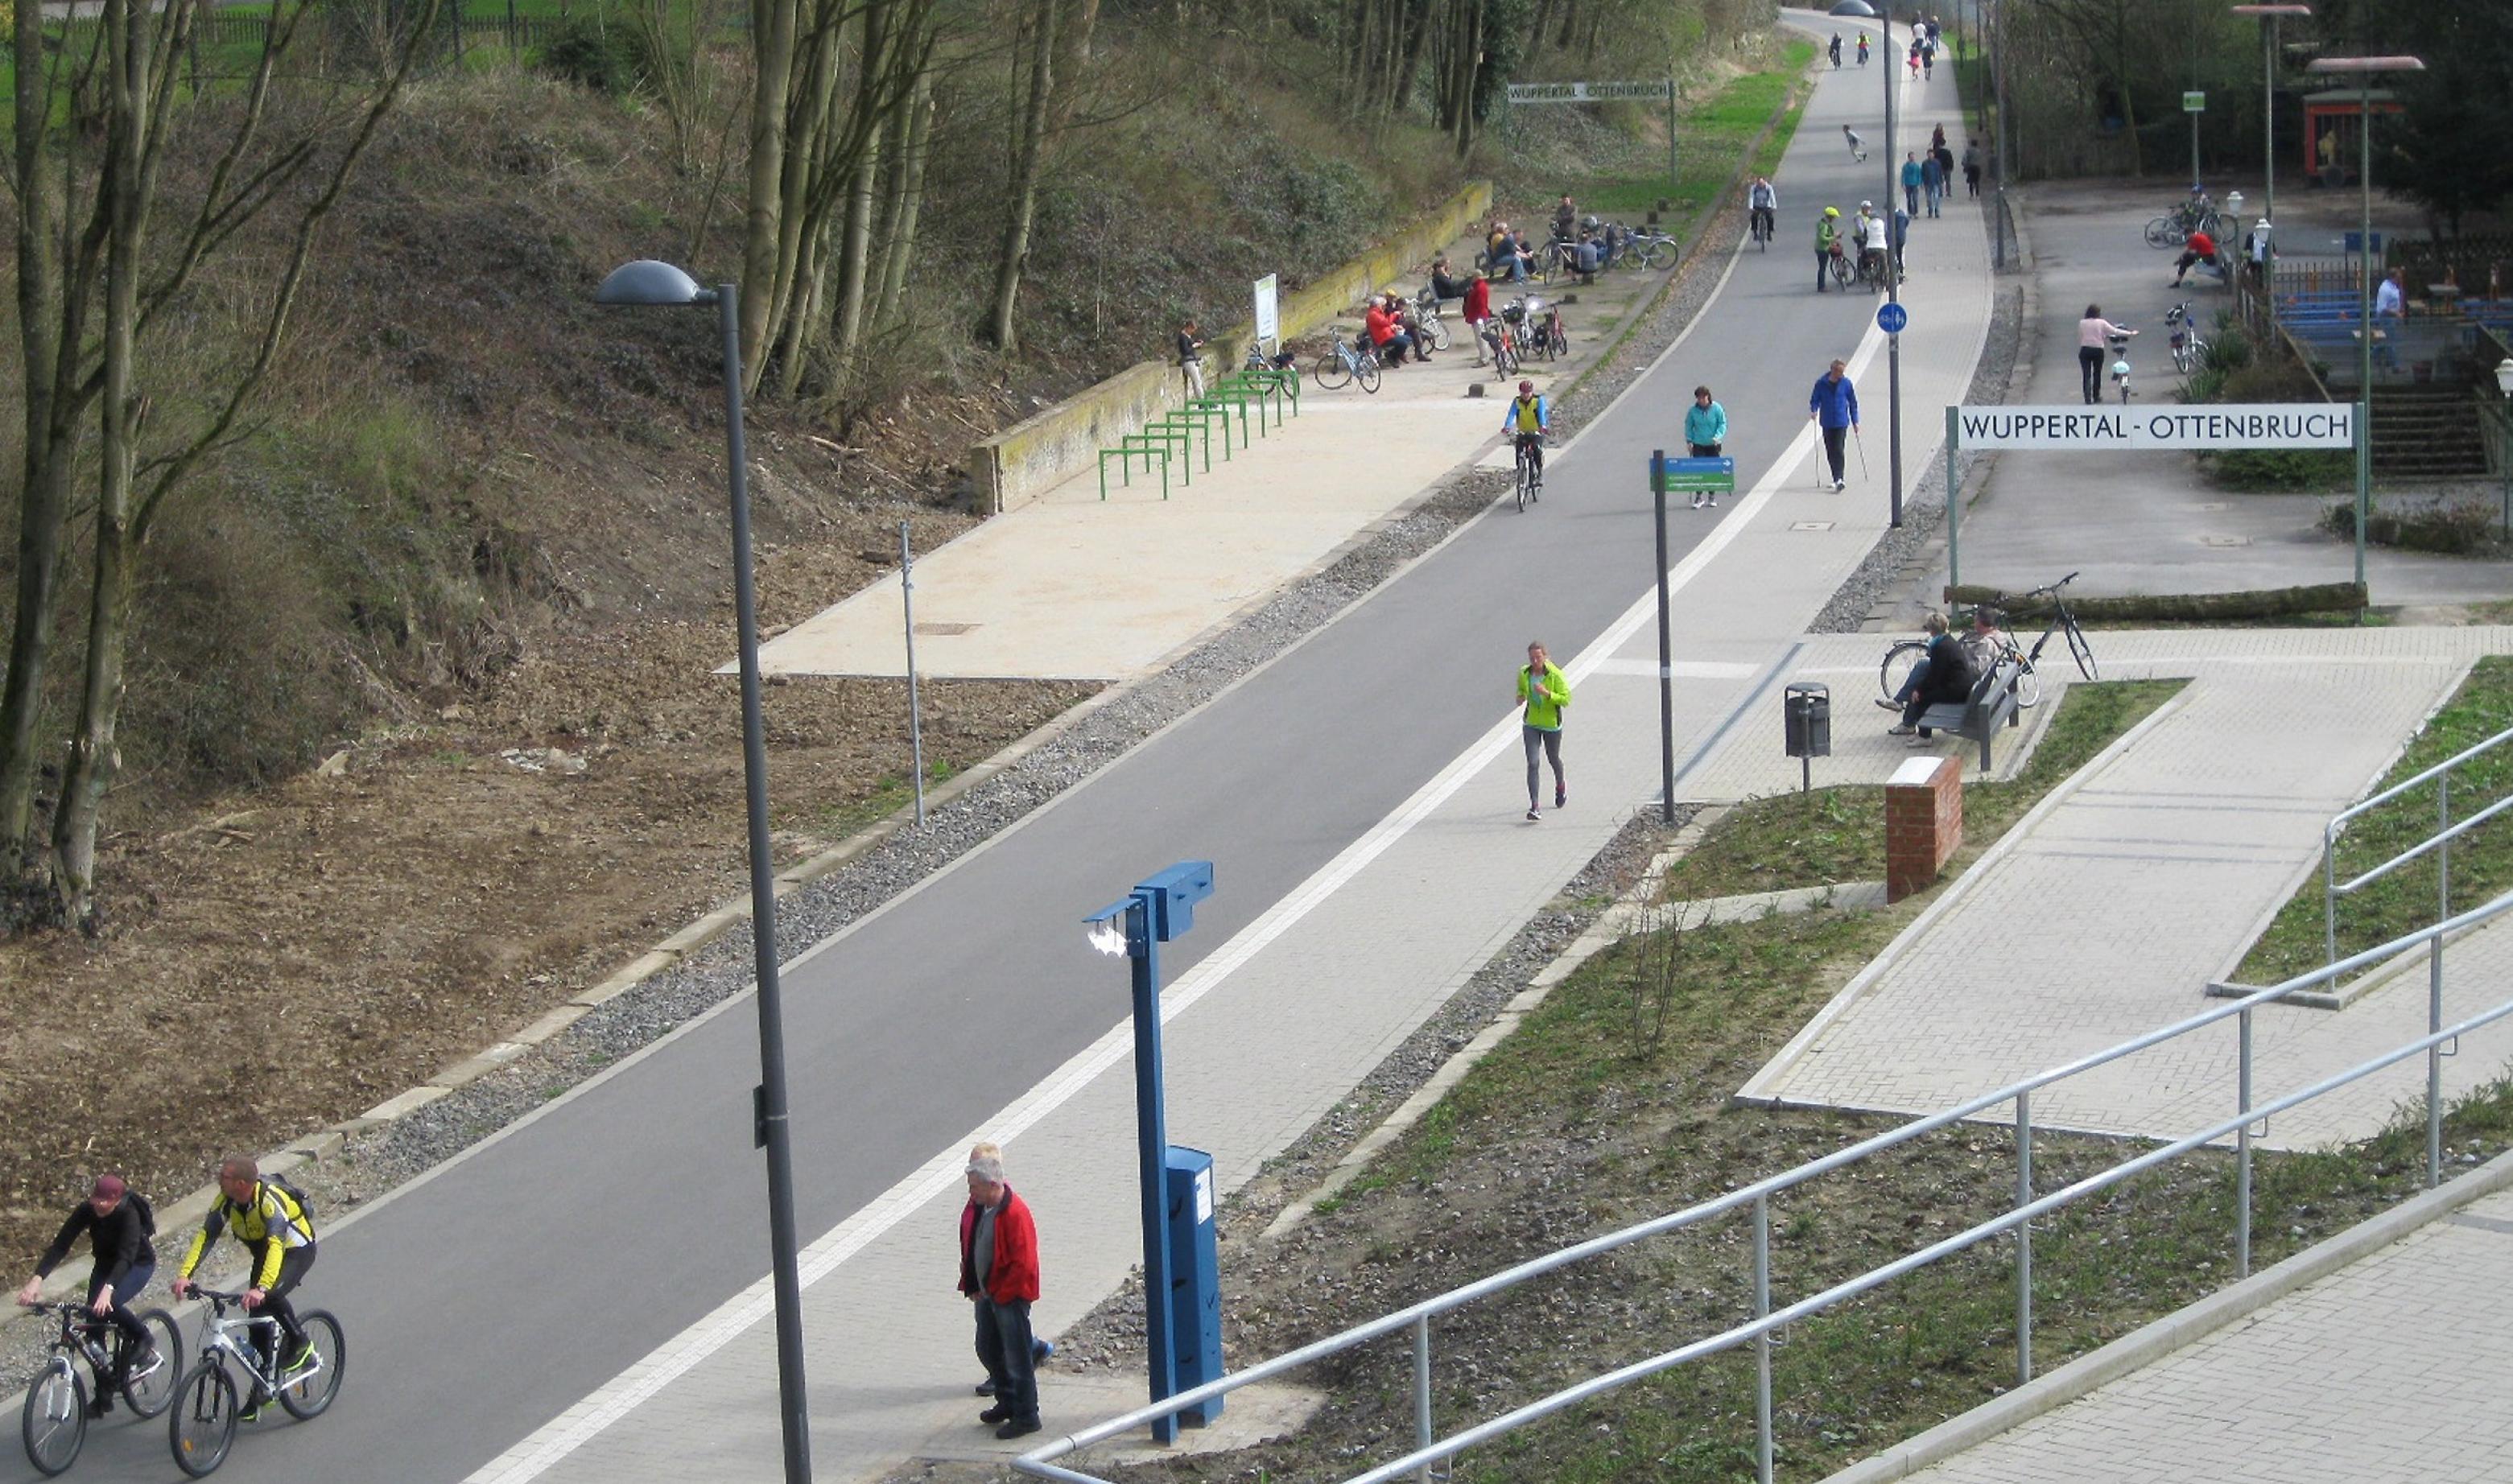 Fuß- und Radweg vor der Station Wuppertal-Ottenbruch. Wenige Menschen sind unterwegs.